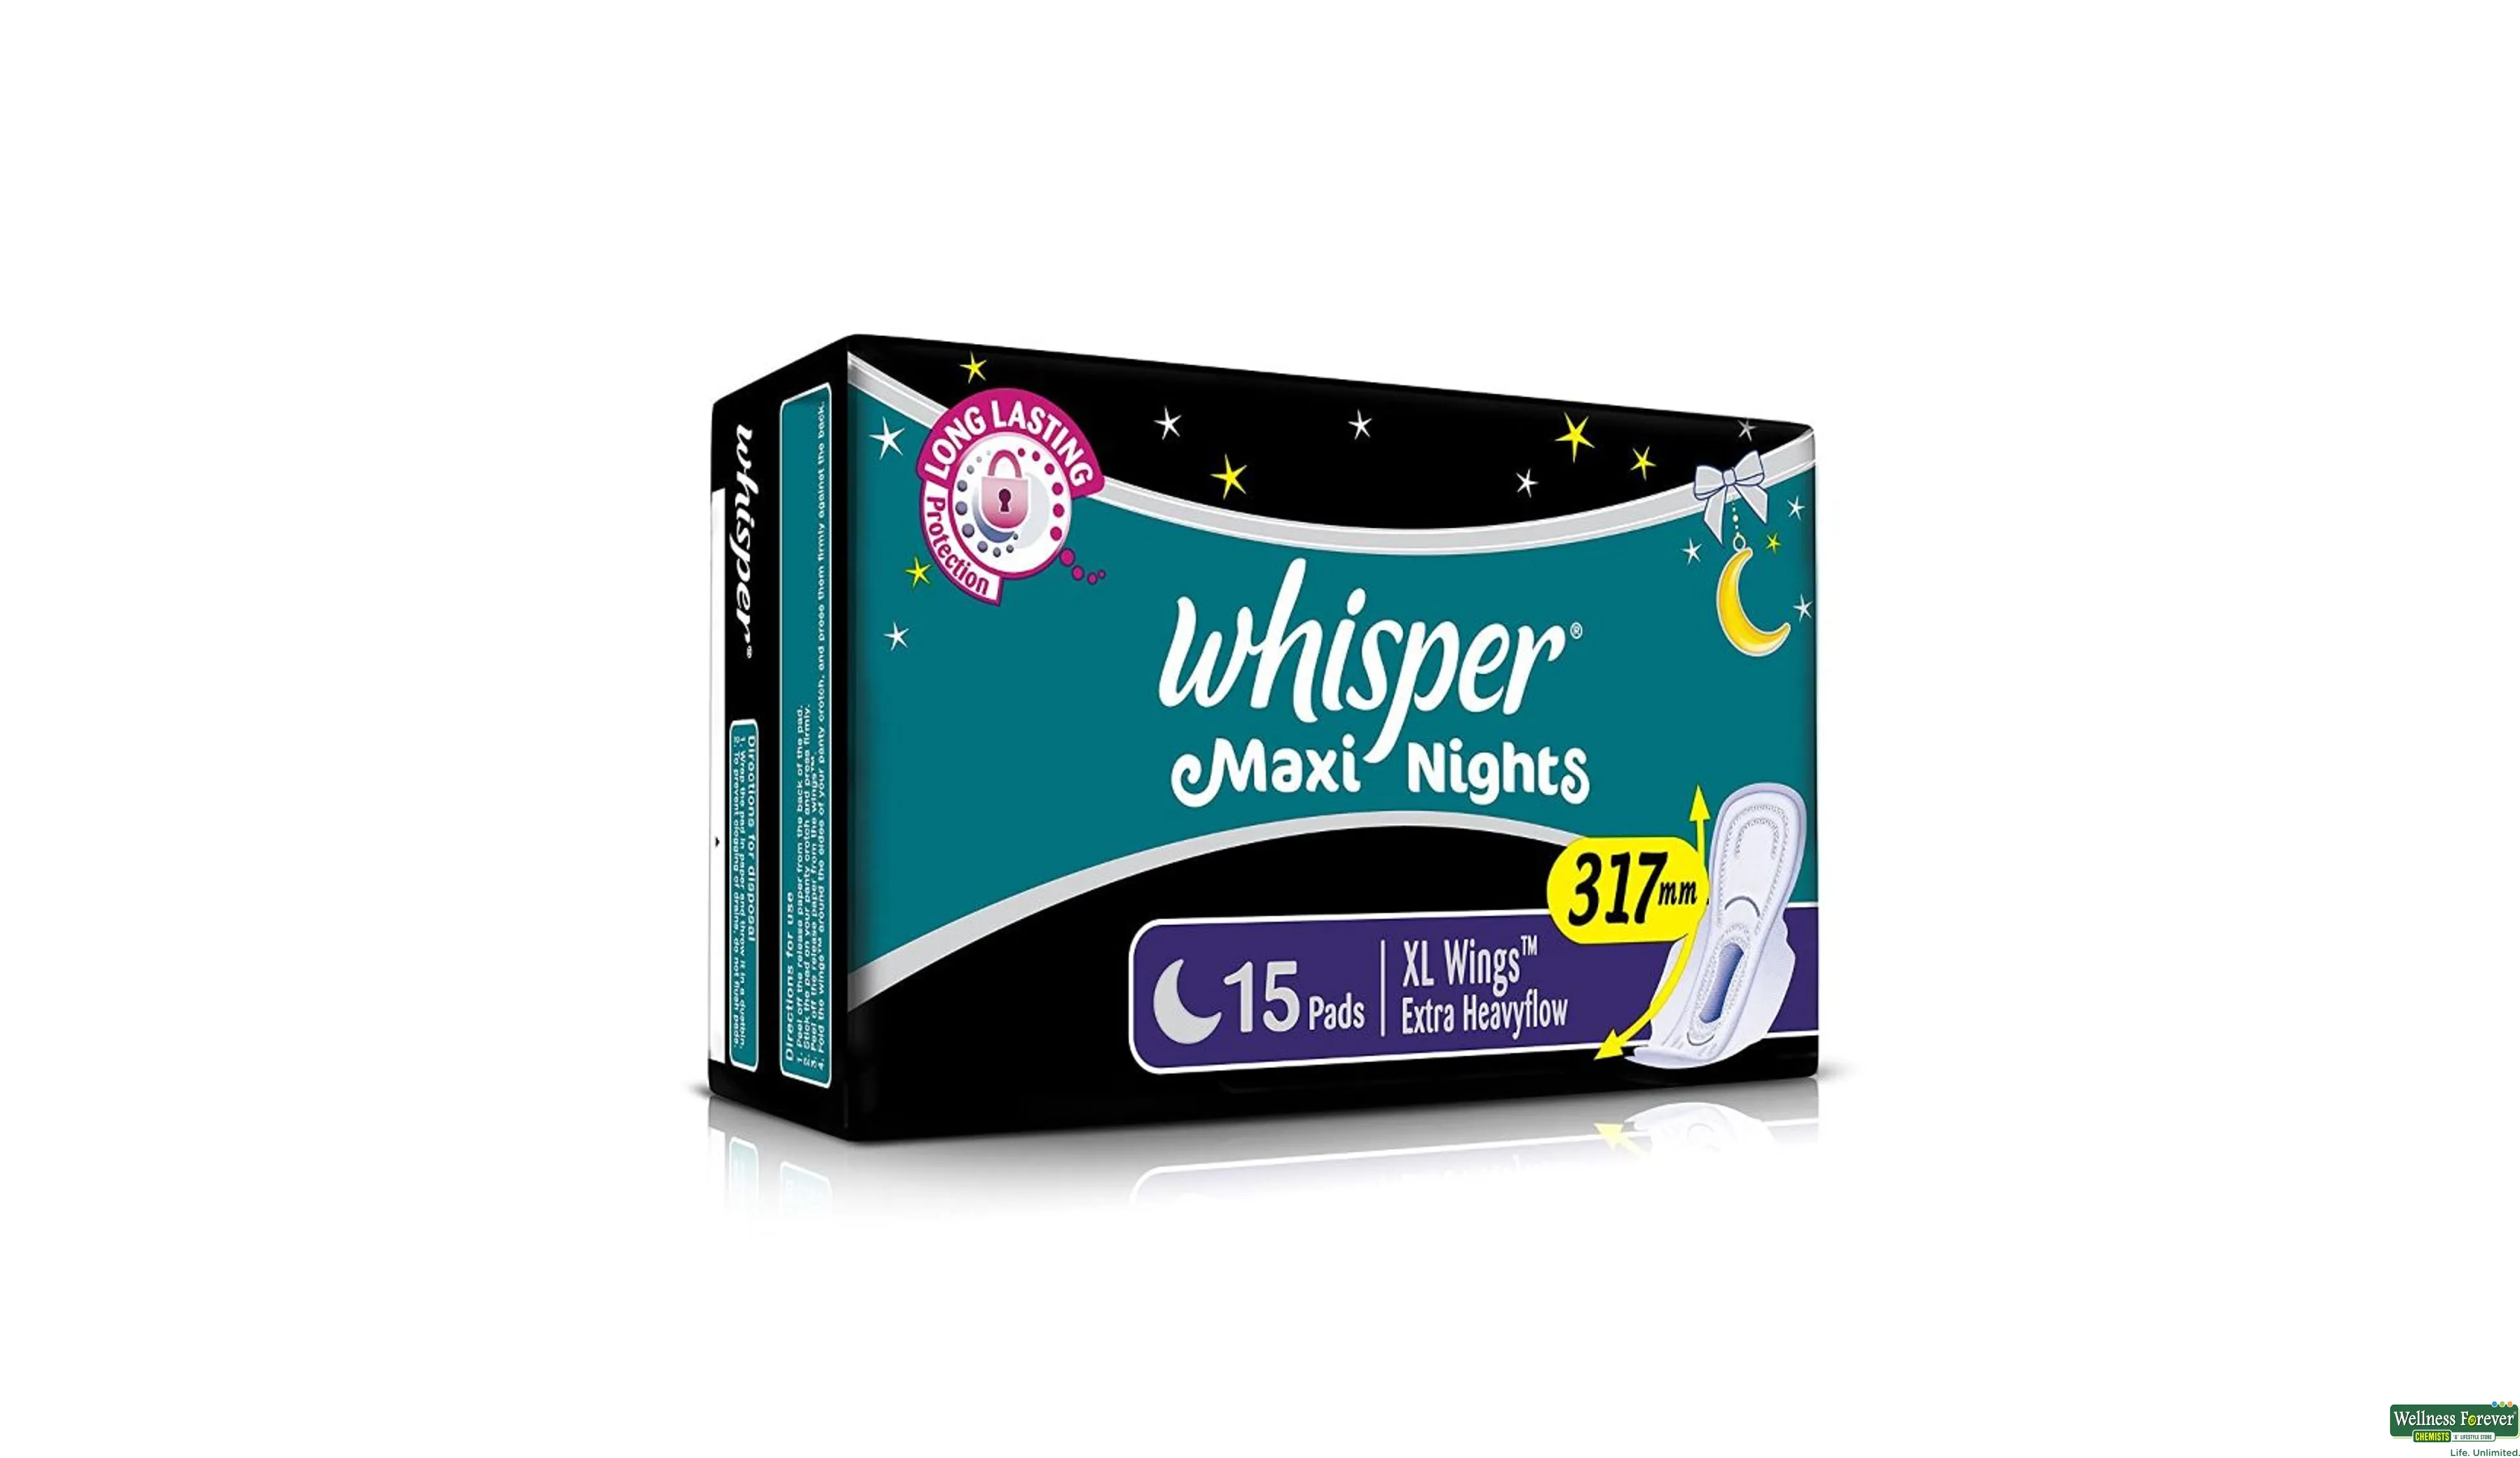 Buy Whisper bindazzzz night period panties 6 +7+7 whisper maxi